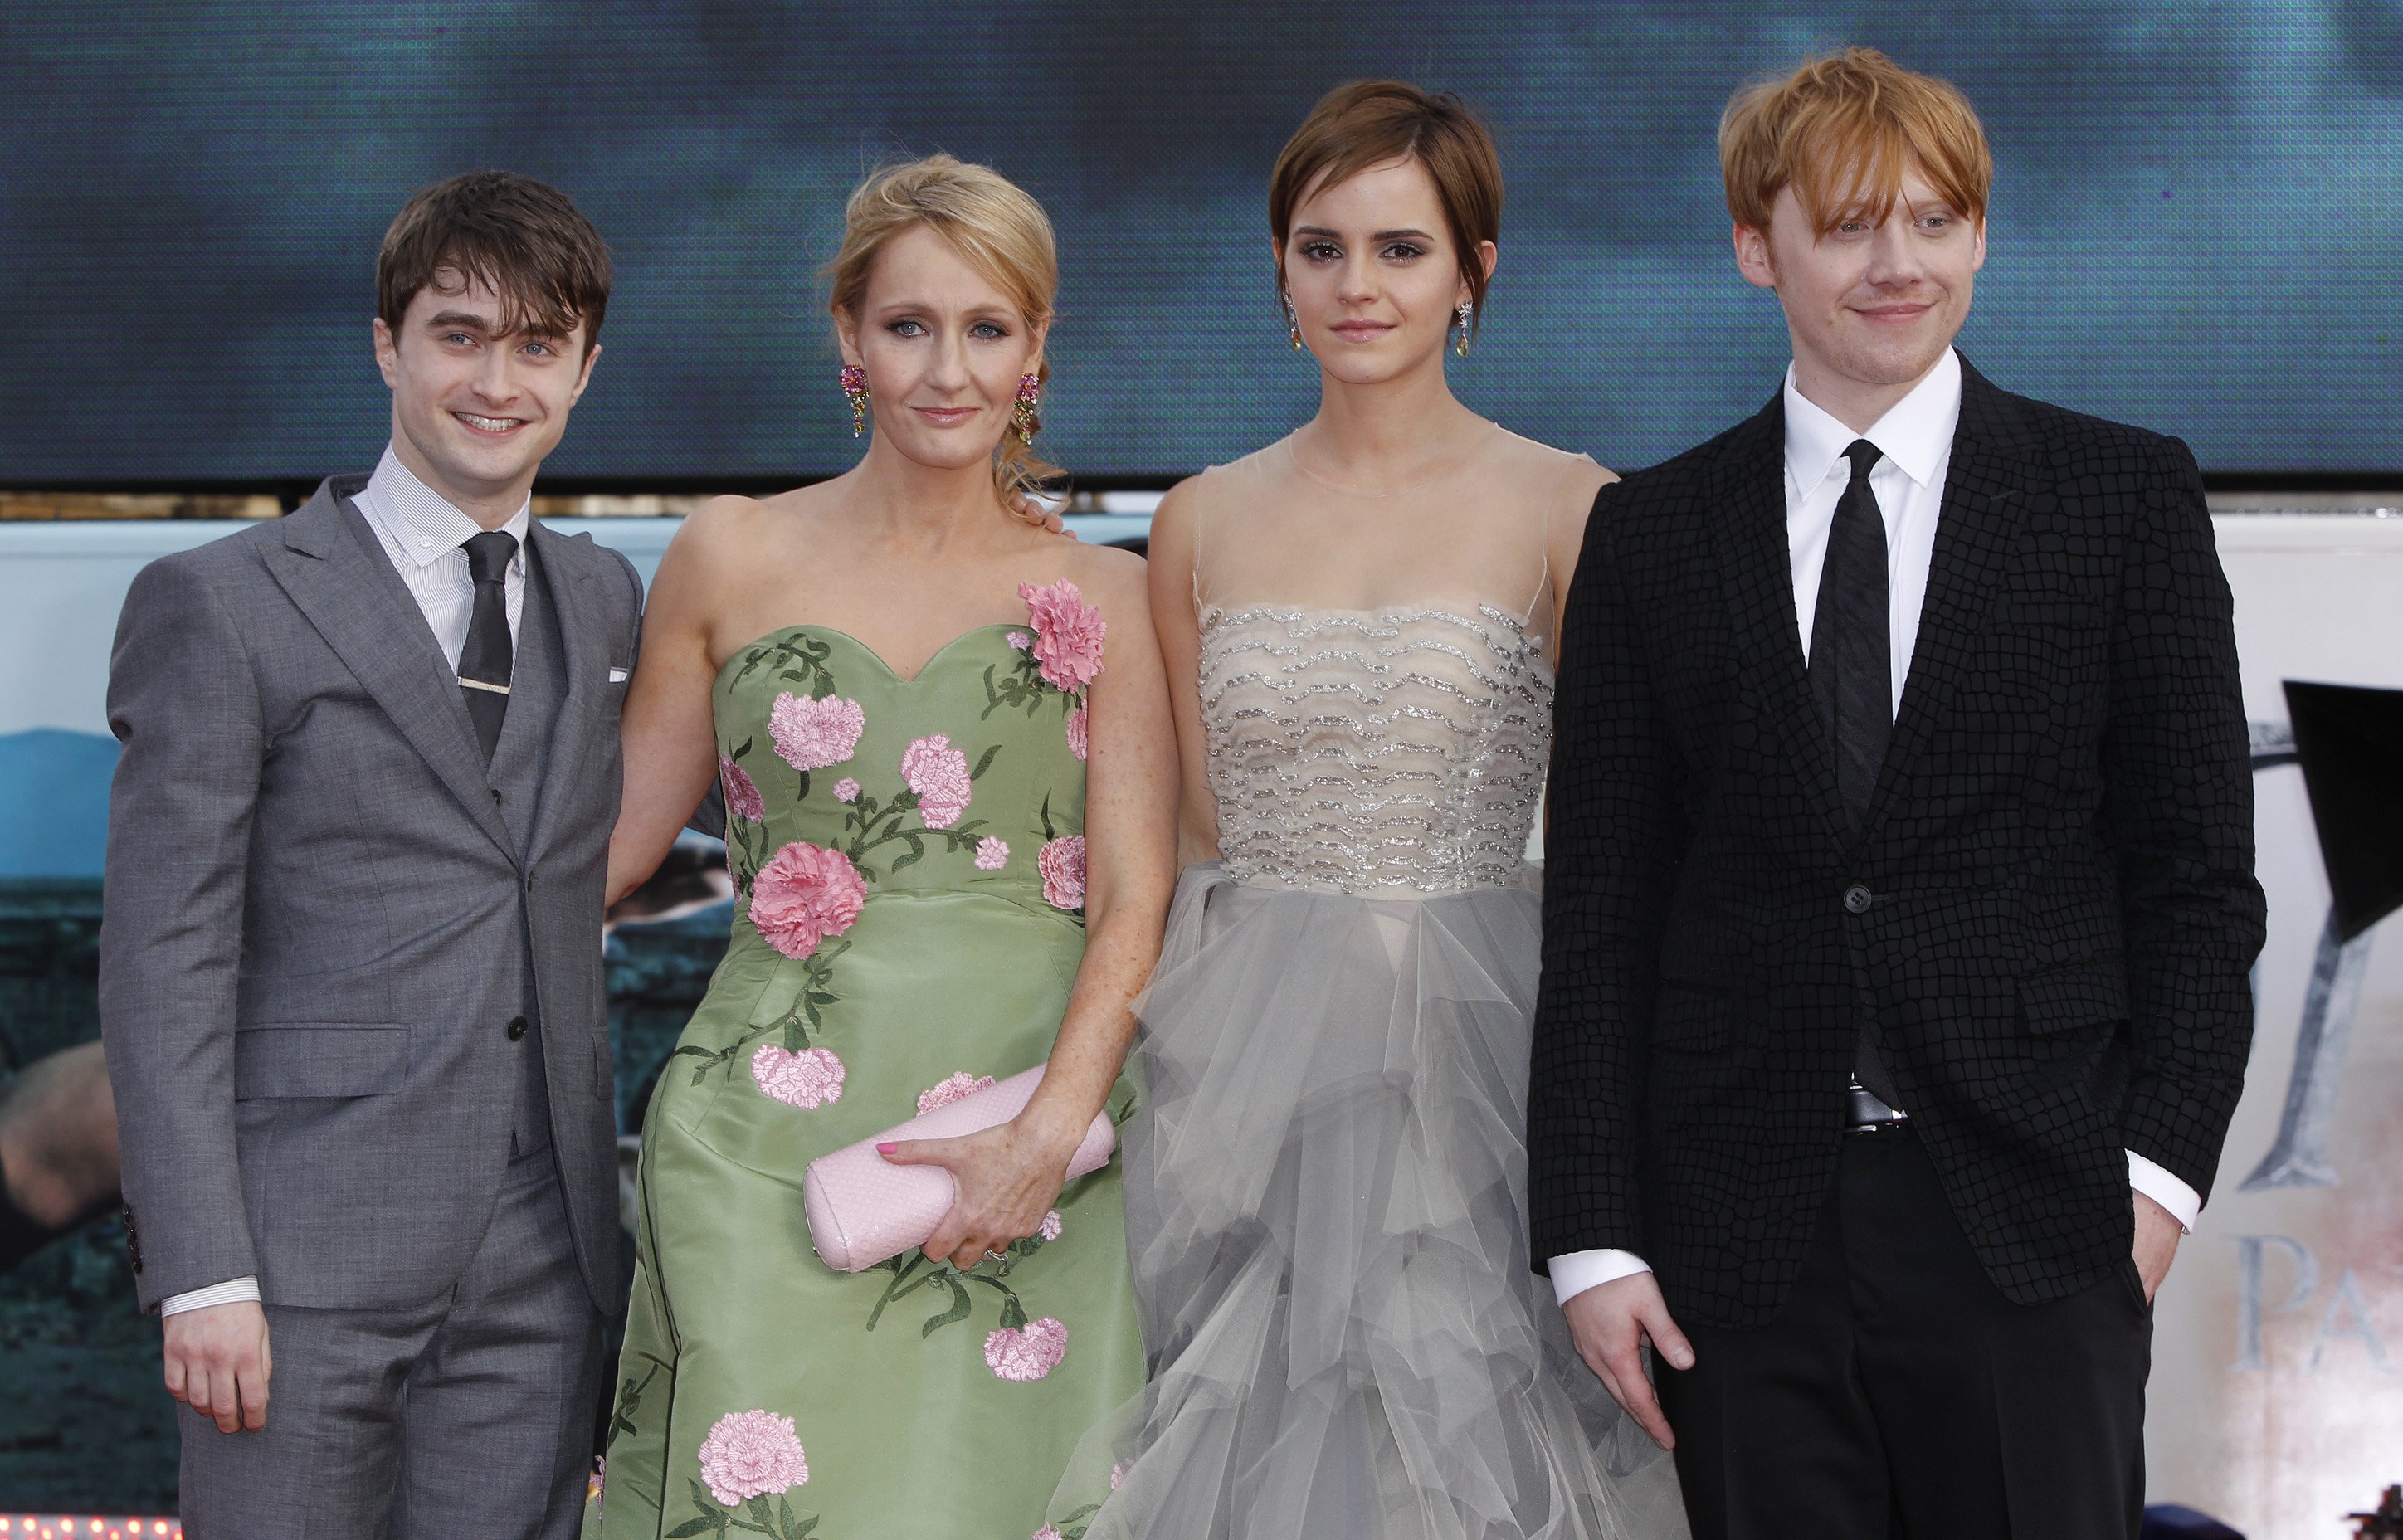 Daniel Radcliffe y J.K. Rowling, enfrentados por una polémica transfóbica